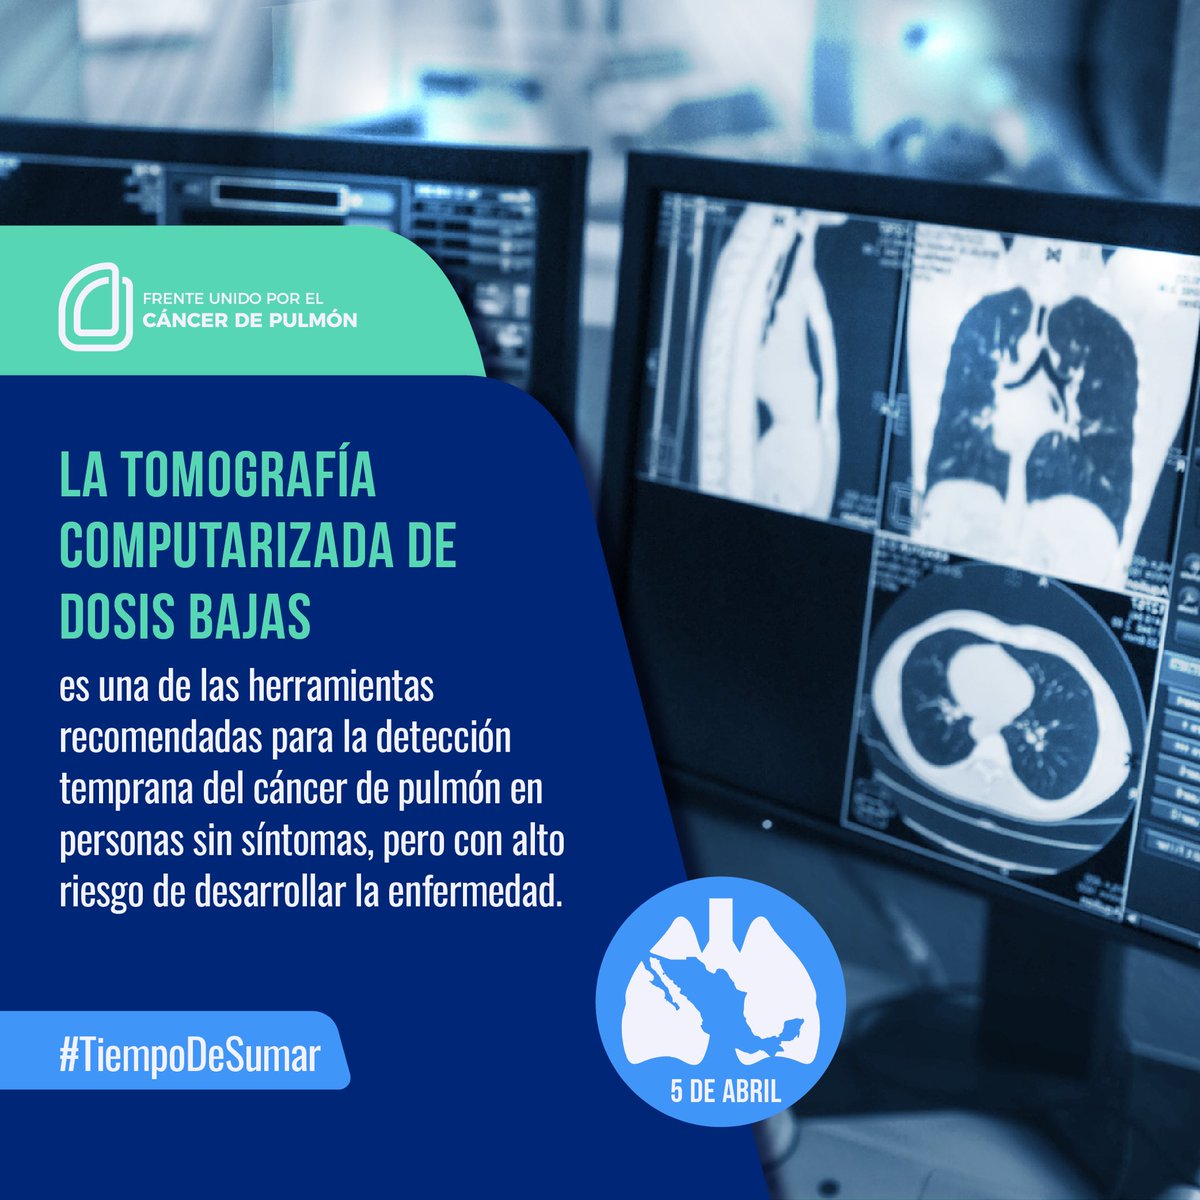 ¿Qué es la tomografía computarizada de dosis bajas? Es una de las herramientas más recomendadas para la detección oportuna del #CáncerDePulmón en personas que no presentan síntomas. #TiempoDeSumar